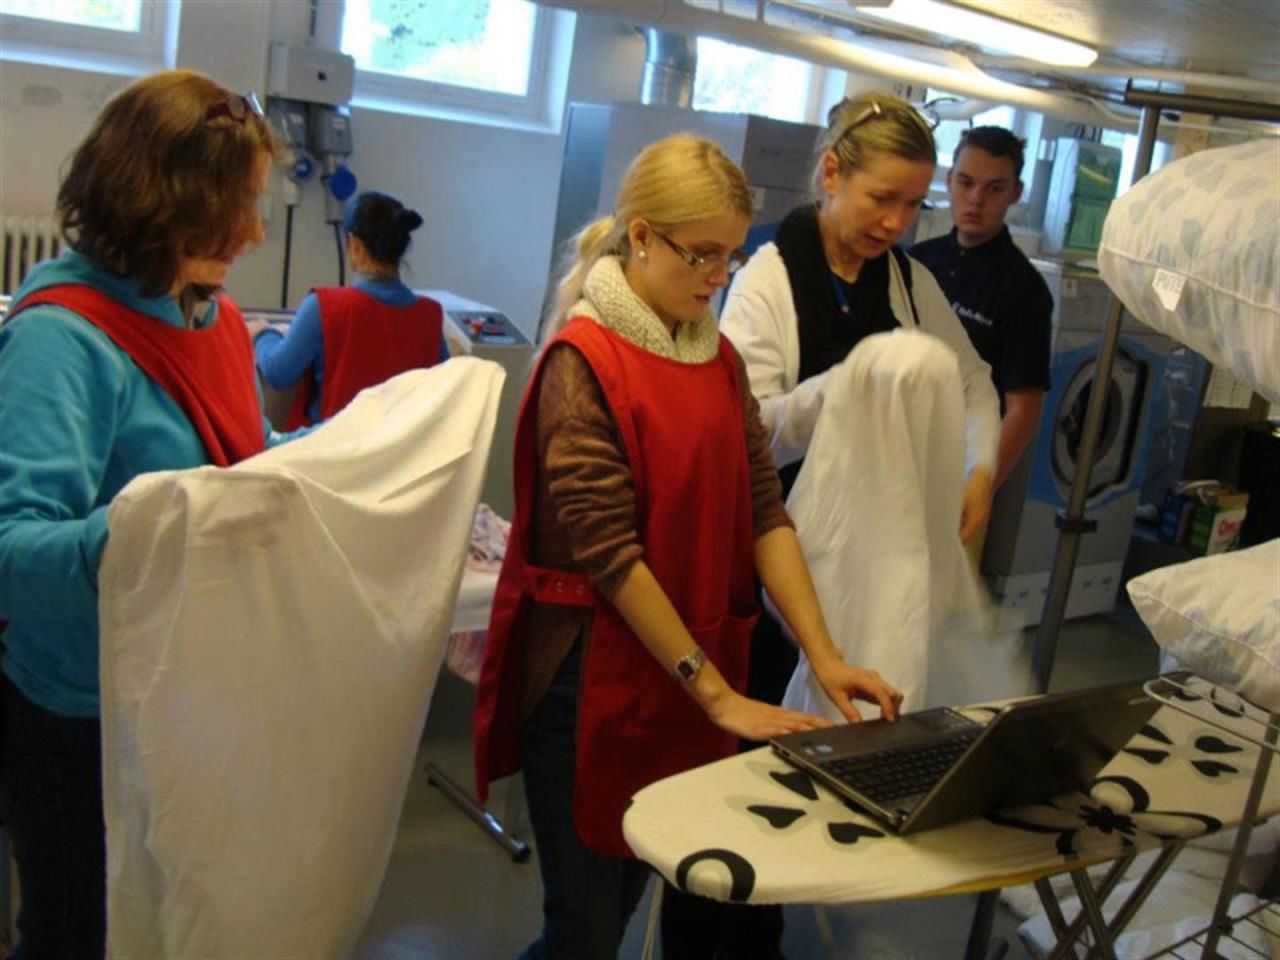 Bildet viser elever og lærere som bretter stretcs-laken på vaskeri og ser på en PC